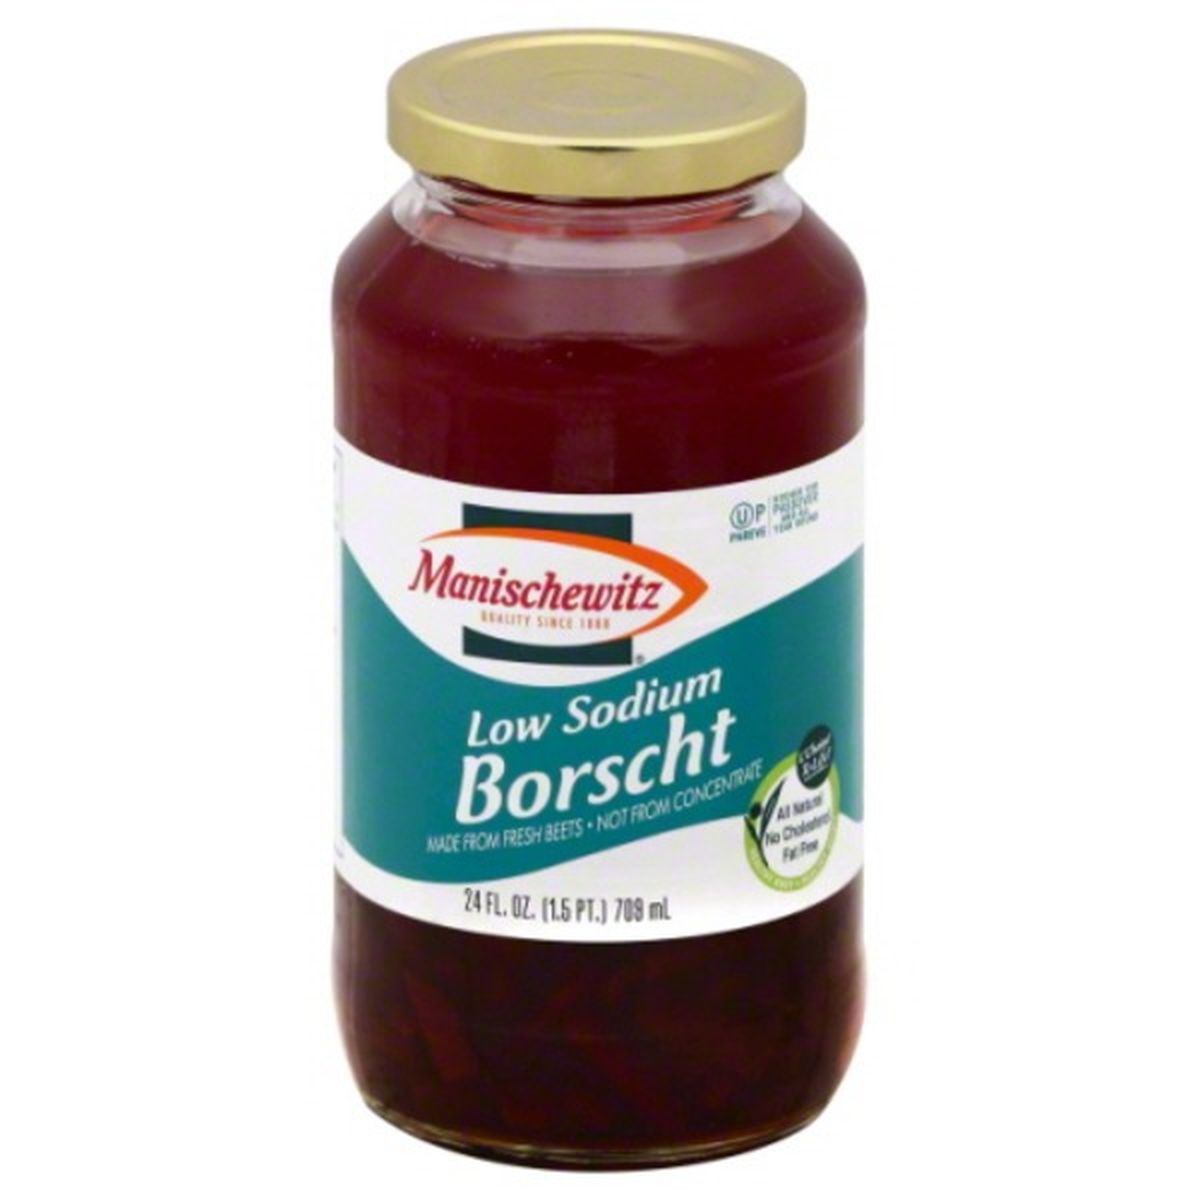 Calories in Manischewitz Borscht, Low Sodium